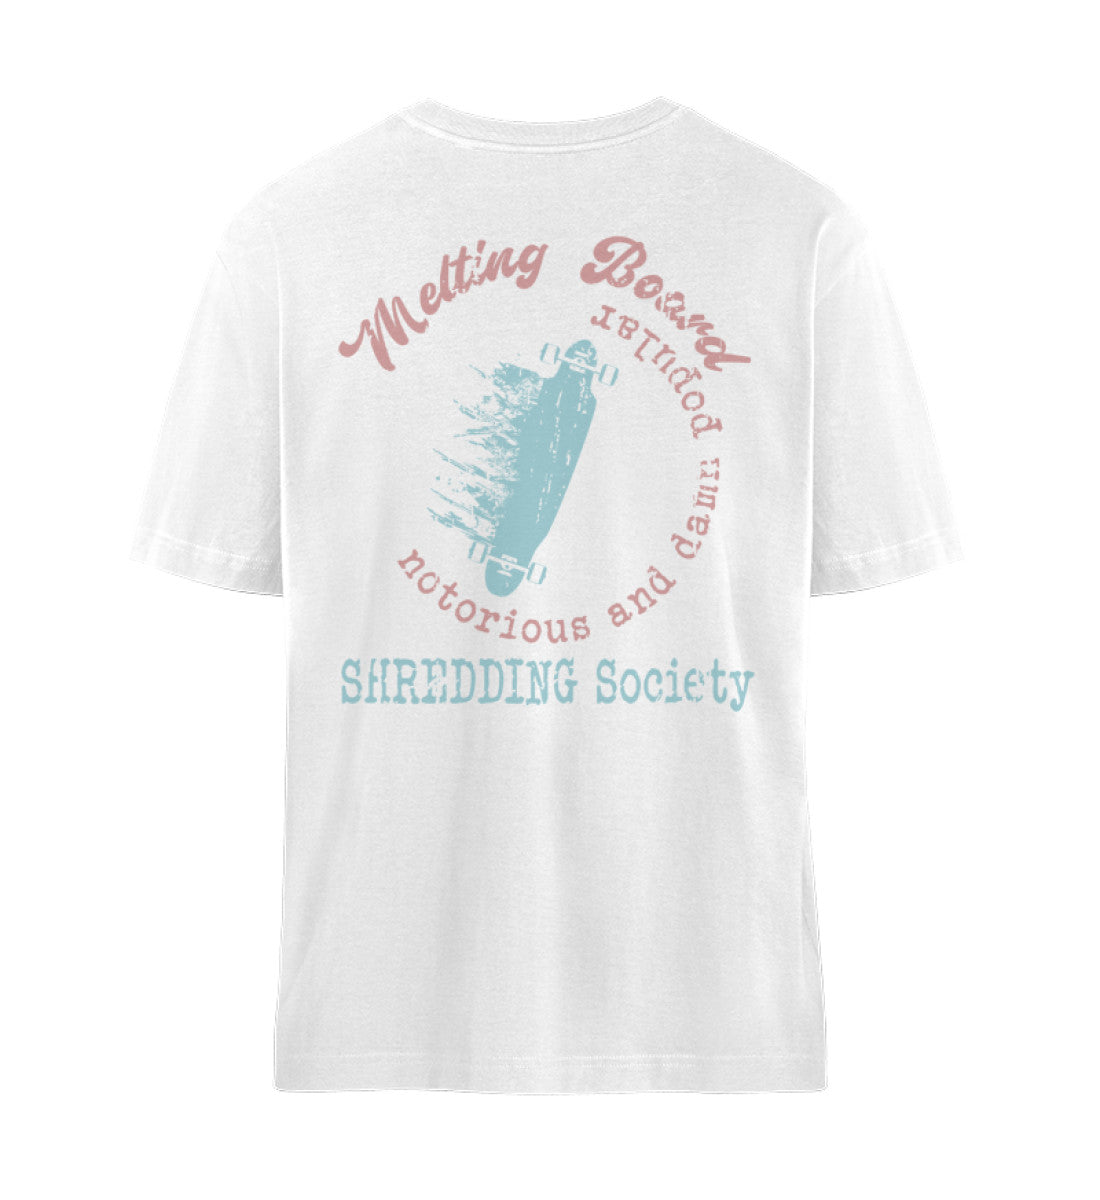 Weißes T-Shirt Unisex Relaxed Fit für Frauen und Männer bedruckt mit dem Design der Roger Rockawoo Kollektion Melting Skateboard